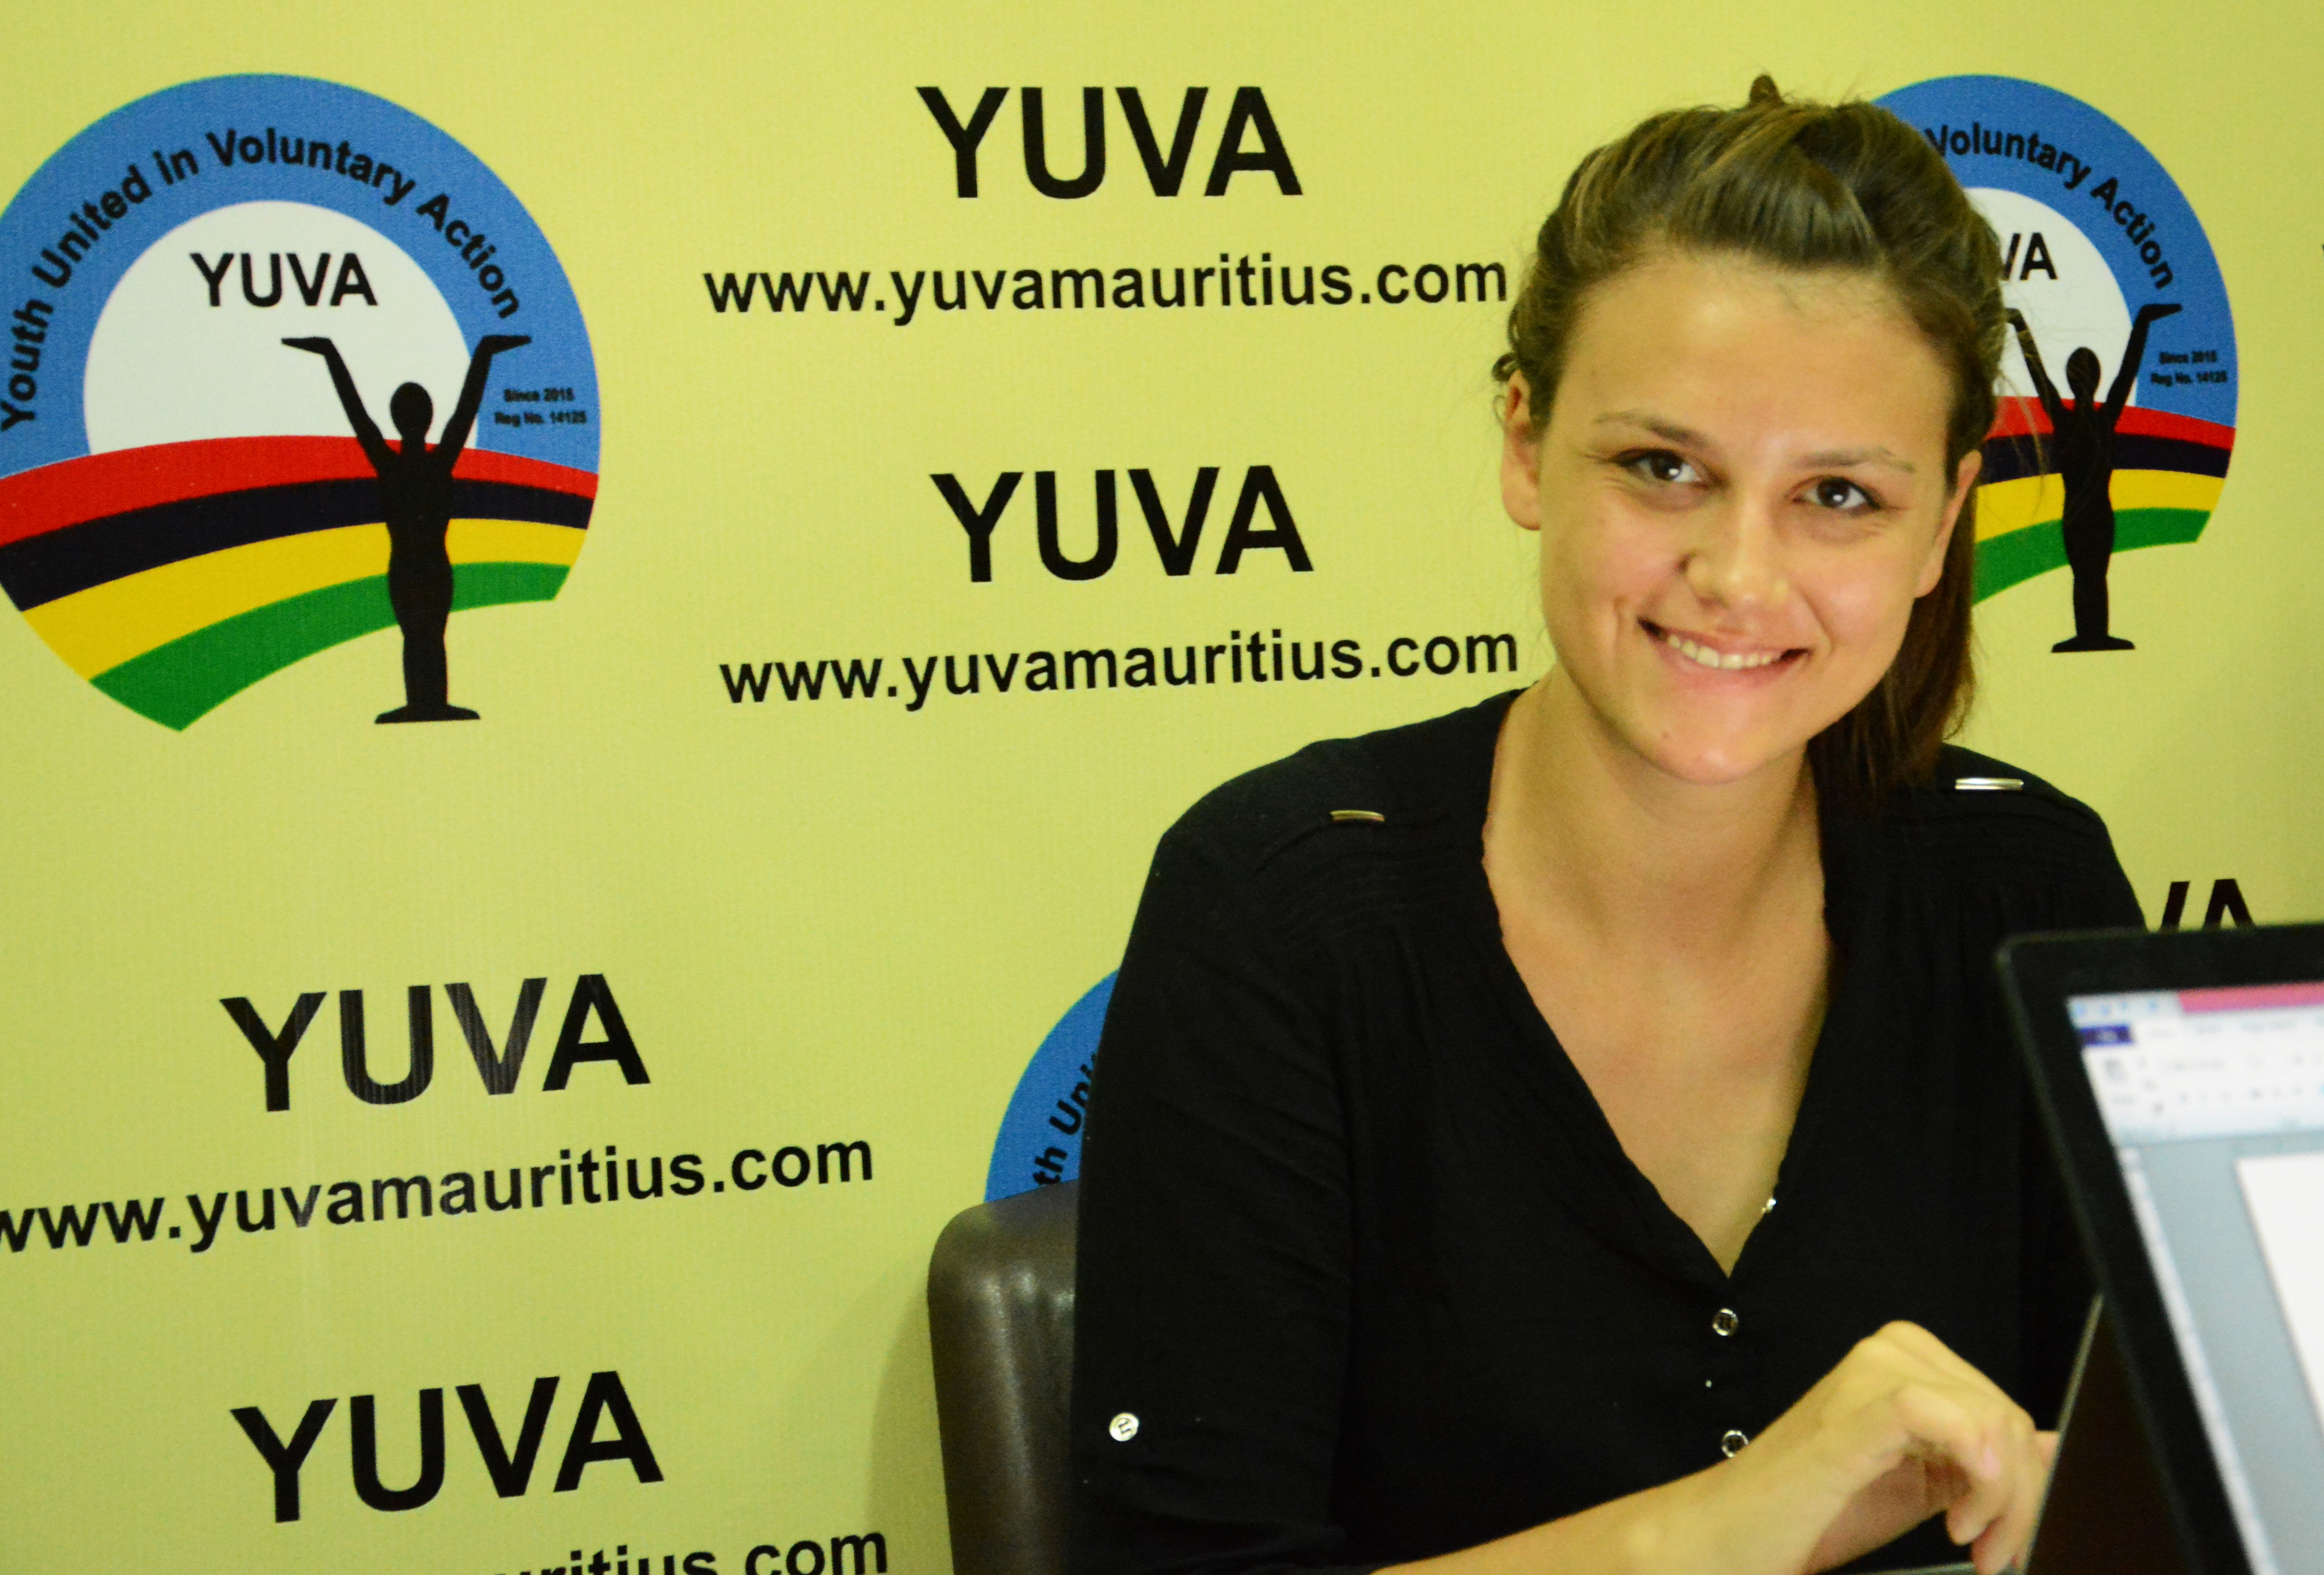 Jana Huwyler: YUVA Sustainable Development Goals